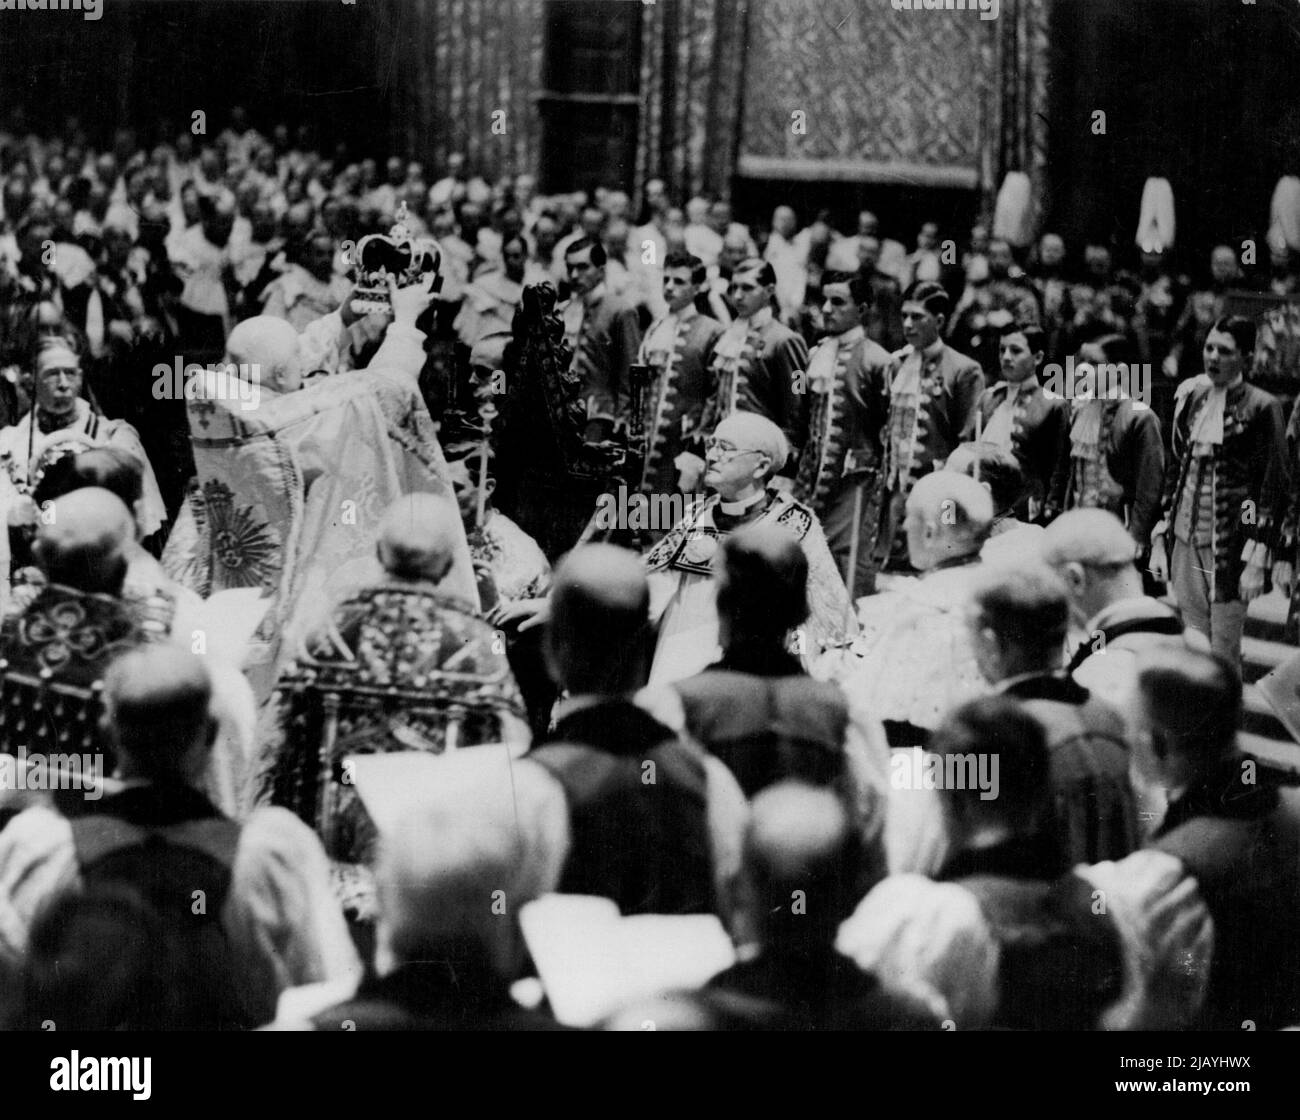 Der Moment der Majestät als König George VI. Am 12. Mai 1937 in Westminster Abbey zum König und Kaiser gekrönt wurde. Der Erzbischof von Canterbury, der die Krone von St. Edward vom Dekan von Westminster nahm, stellte sie ehrfürchtig auf den Kopf des Königs. Dabei wurde die tiefe Stille in der Abtei durch die lauten und wiederholten Schreie von „Gott rette den König“ gebrochen. 17. März 1953. (Foto von Daily Mirror). Stockfoto